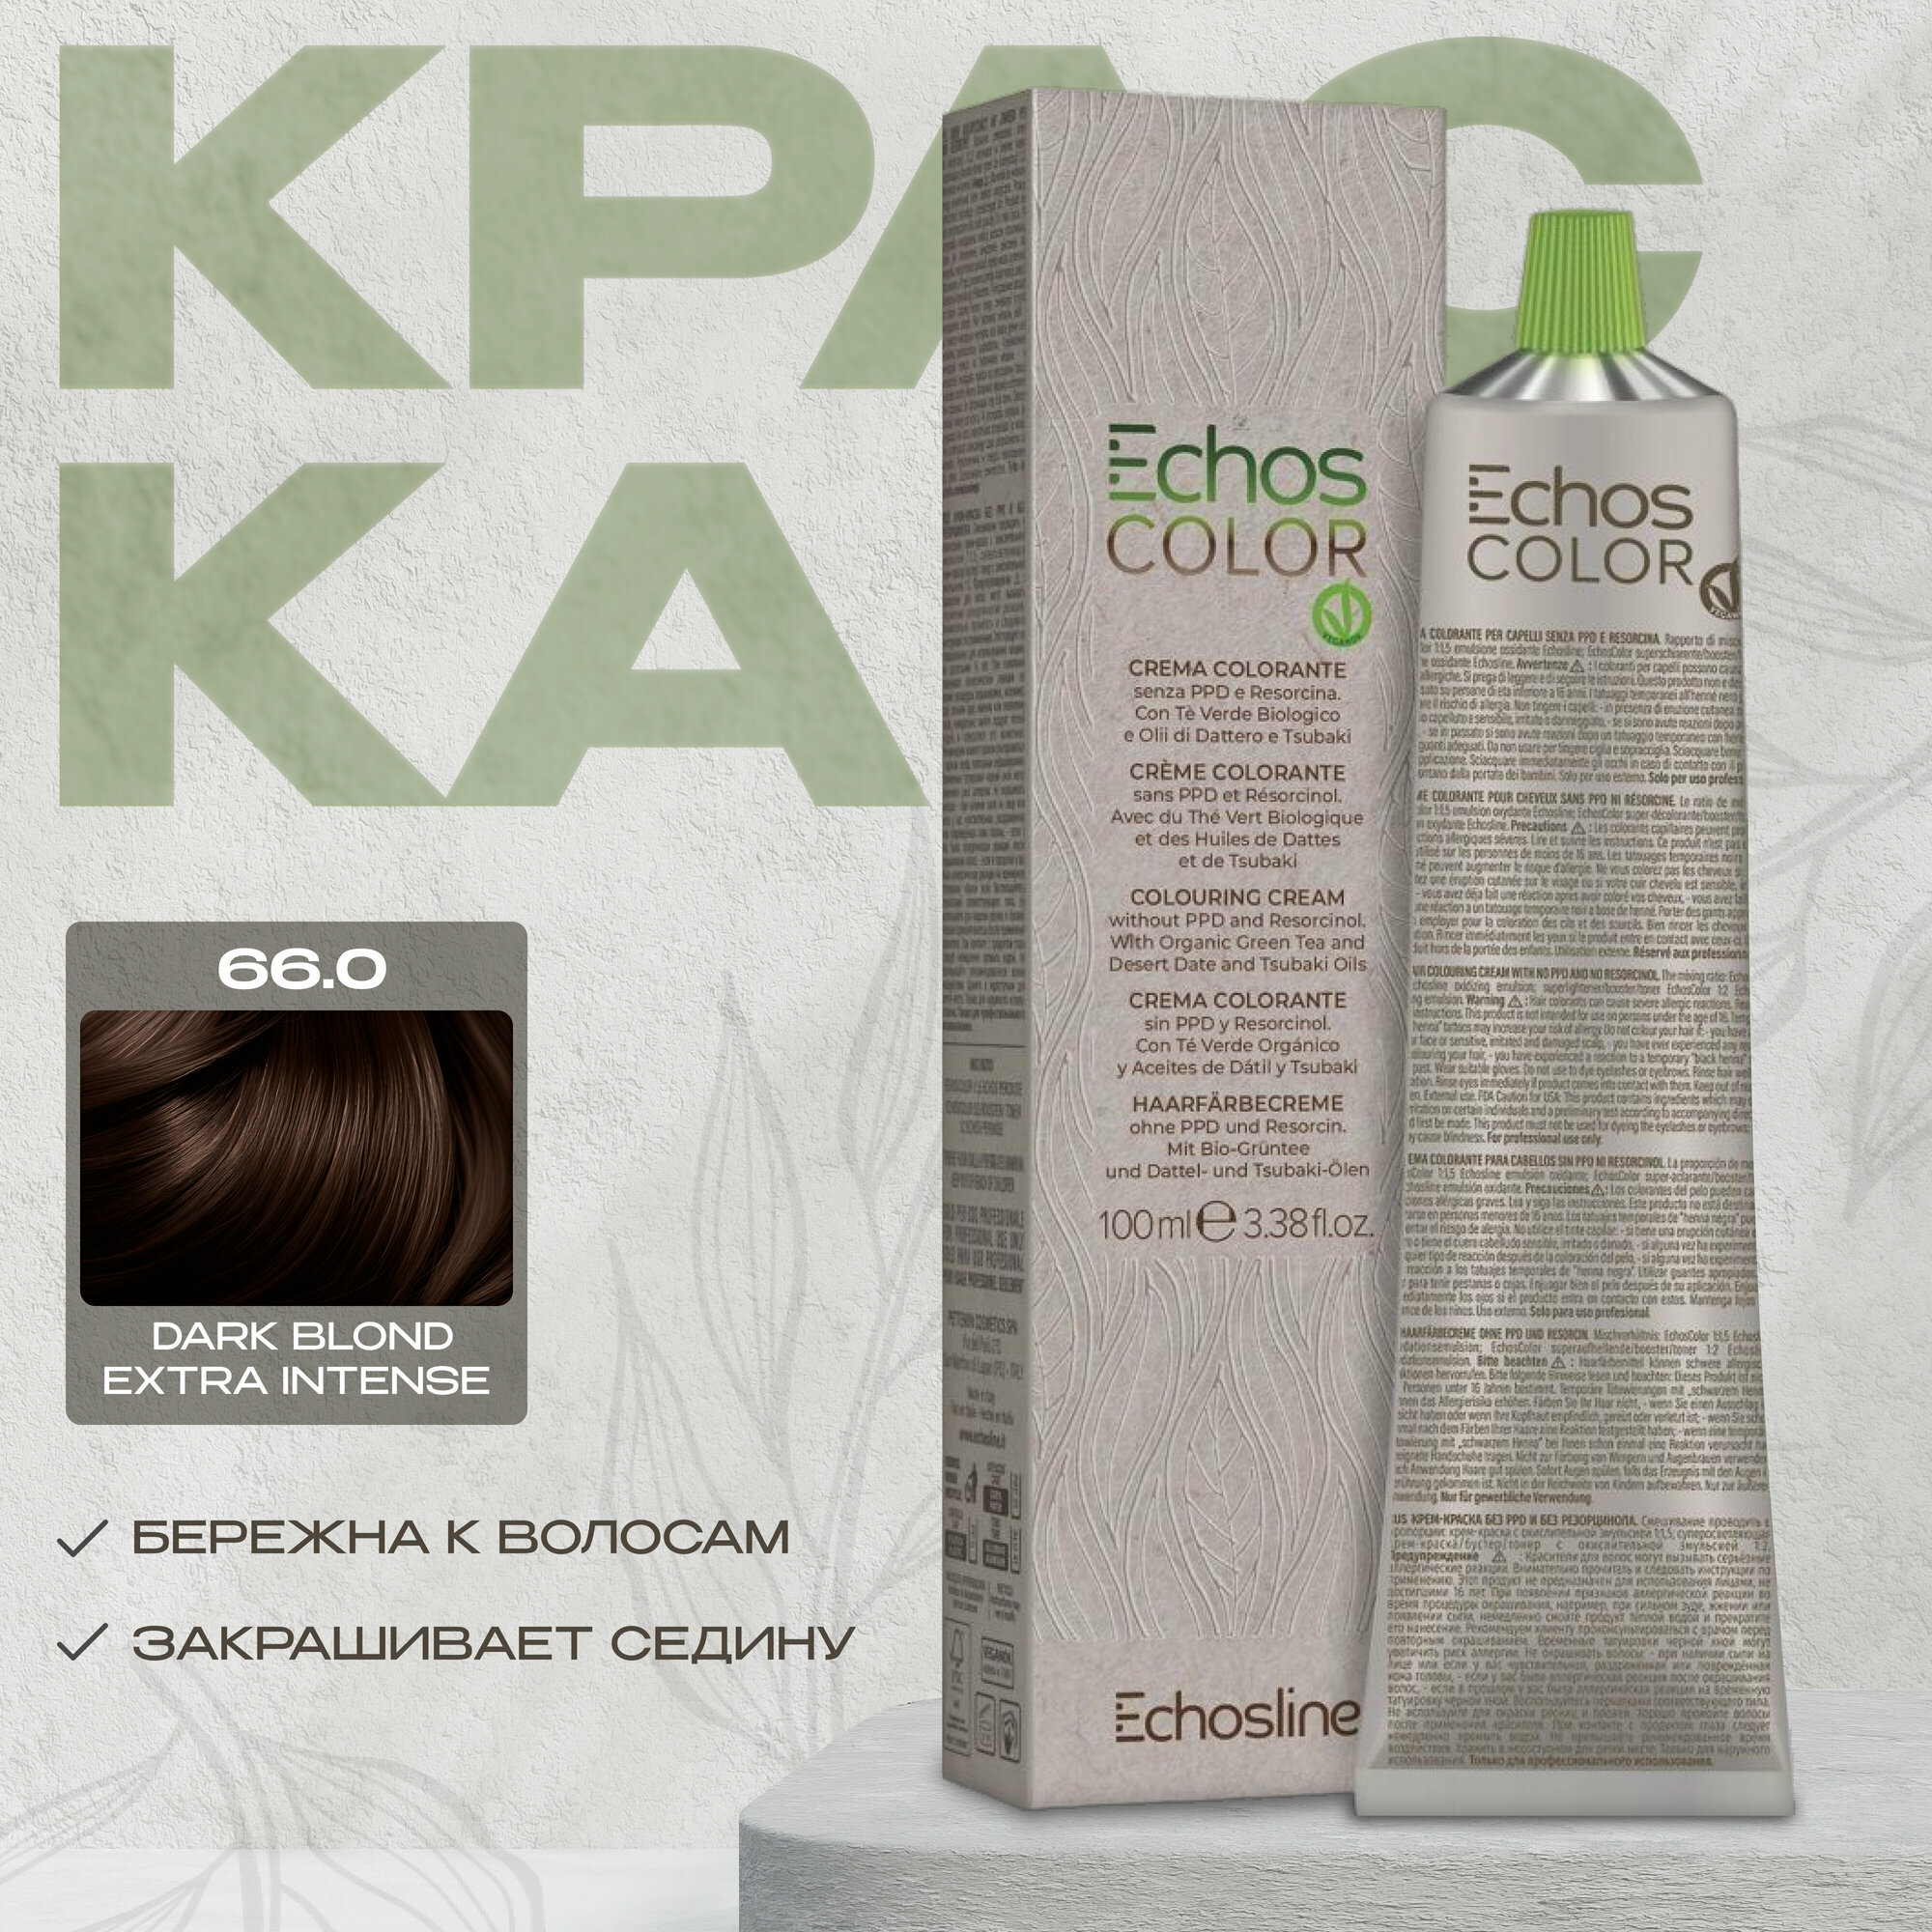 Echos Line Стойкая краска для волос 66.0 DARK BLOND EXTRA INTENSE 100 мл echos color